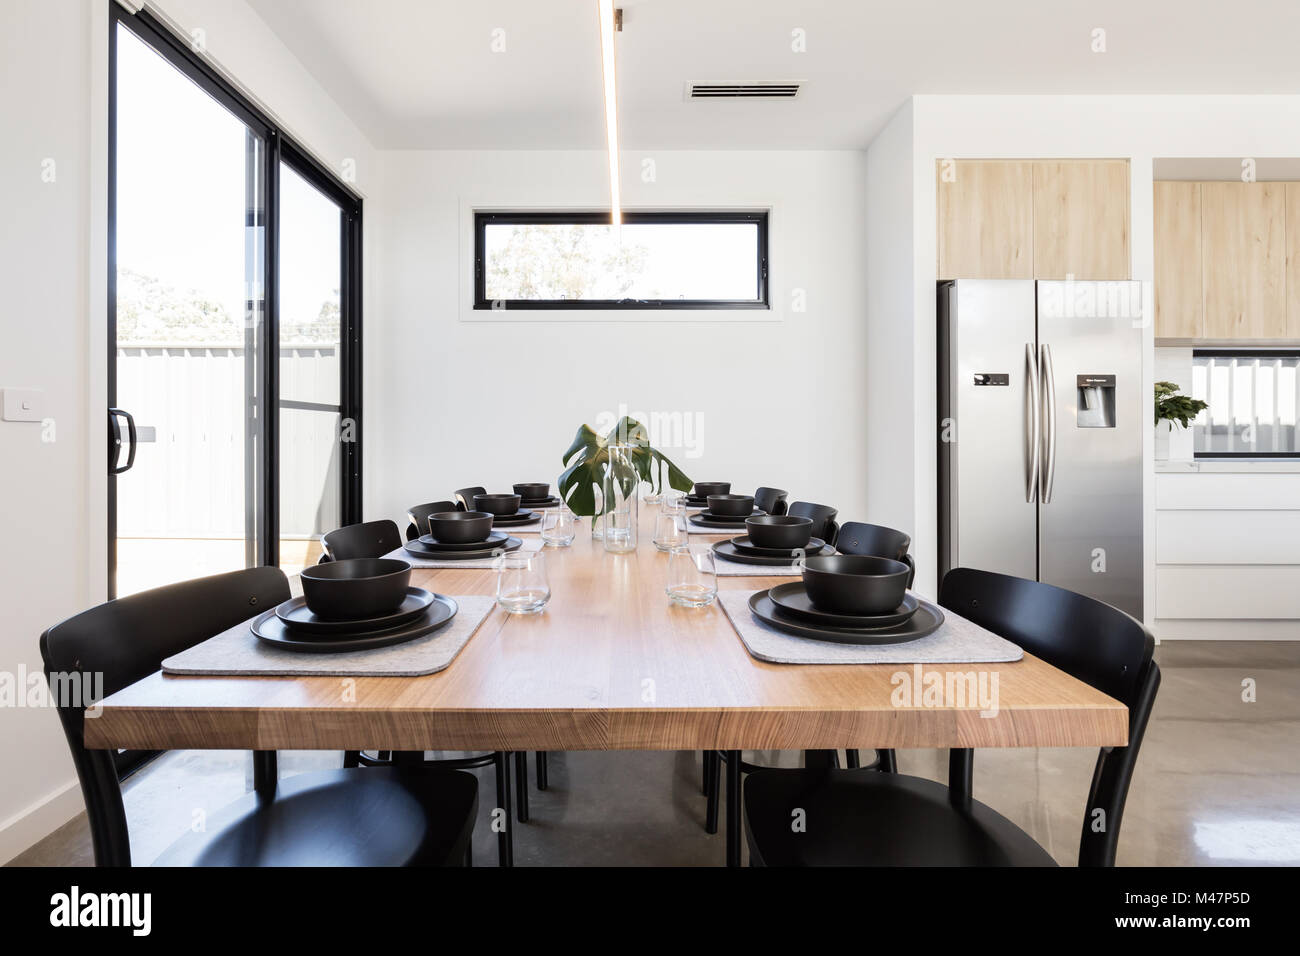 Wunderschöne Abendessen Einstellung der schwarzen Geschirr auf einer Eiche Tisch in einem modernen Haus Stockfoto